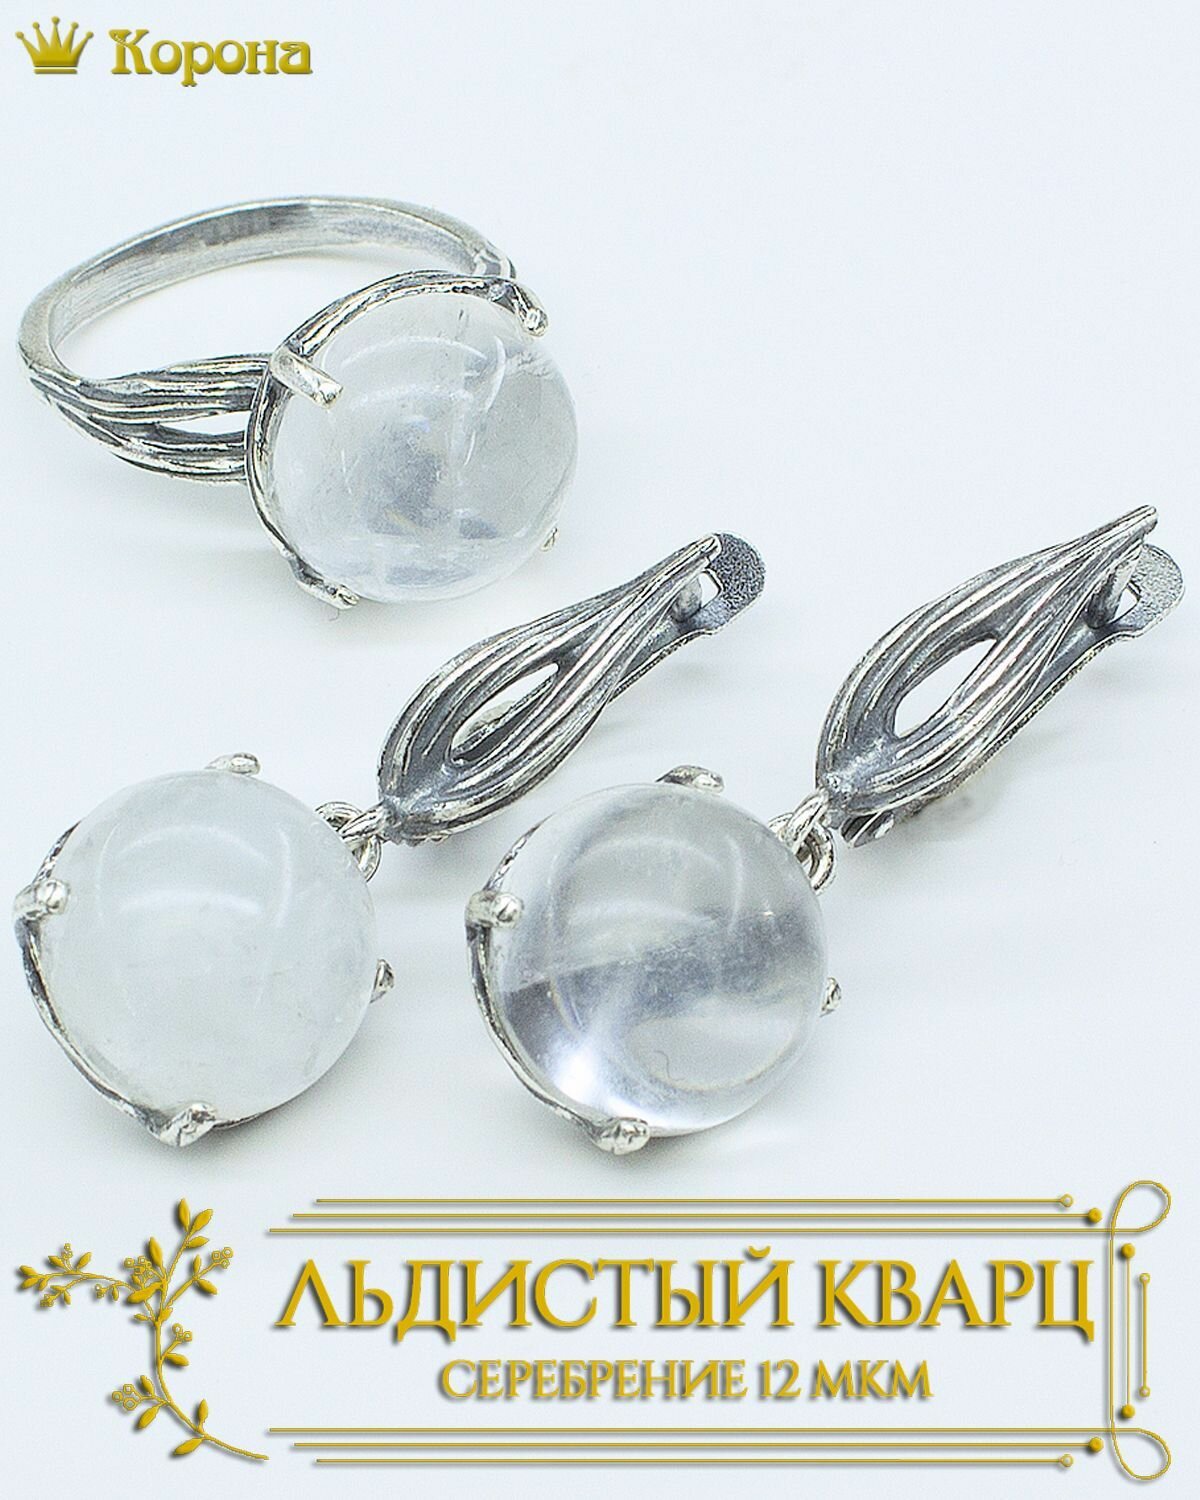 Комплект бижутерии Комплект посеребренных украшений (серьги и кольцо) с кварцем льдистым: кольцо, серьги, кварц, искусственный камень